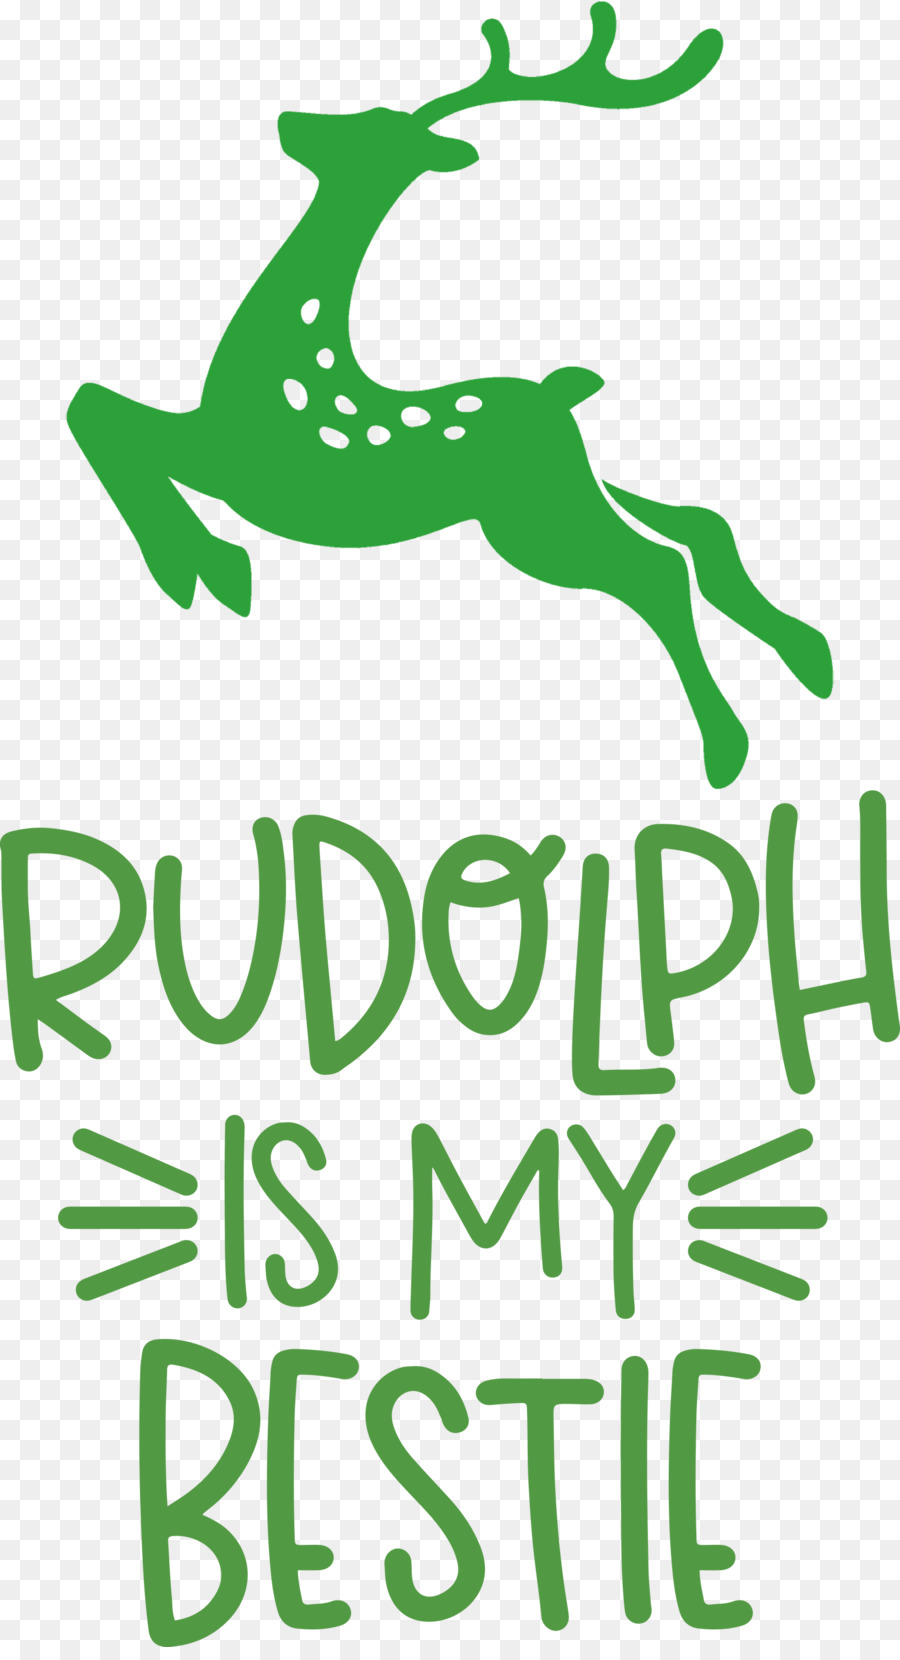 Rudolph è il mio bestie Rudolph Deer - 